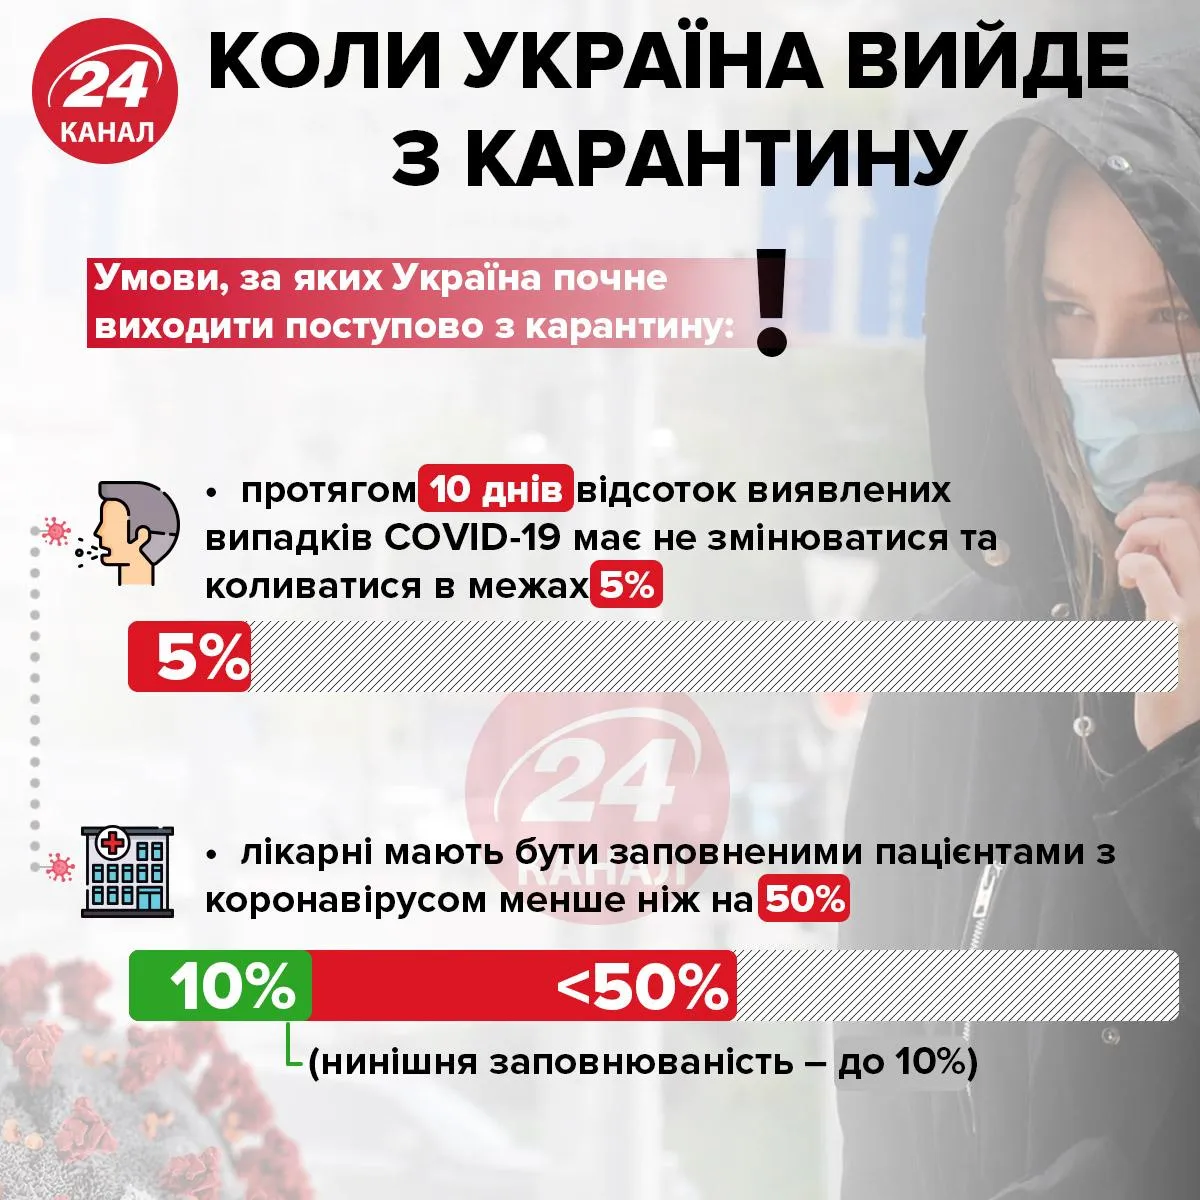 Условия, при которых Украина выйдет из карантина Инфографика 24 канал